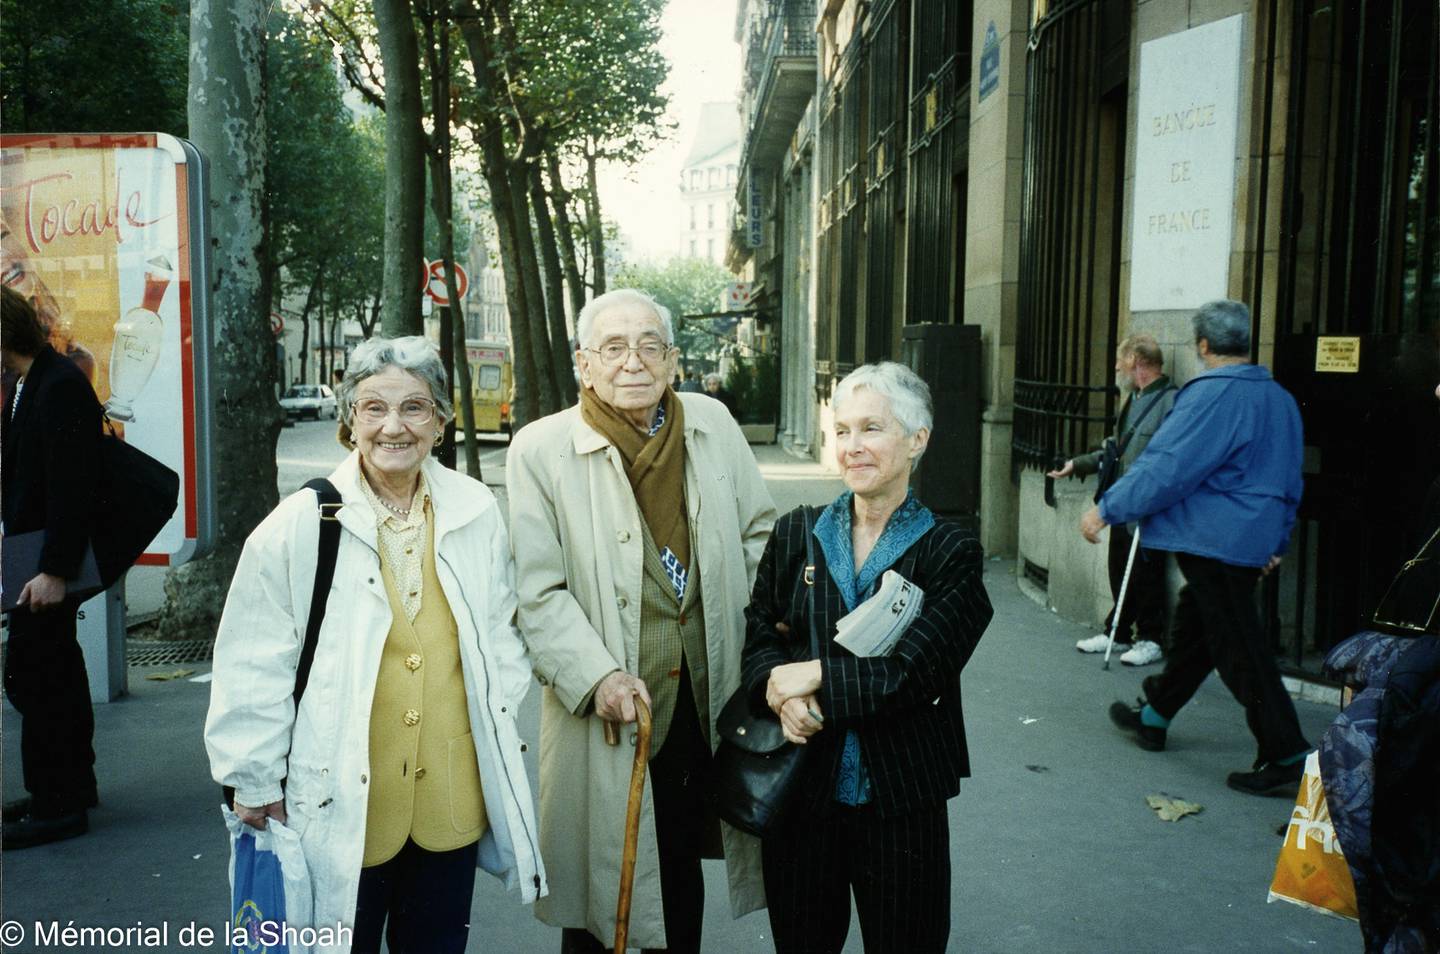 Odette Abadi, left, Moussa Abadi and friend Betty Saville in Paris in 1994. Memorial de la Shoah / Collection Odette Abadi